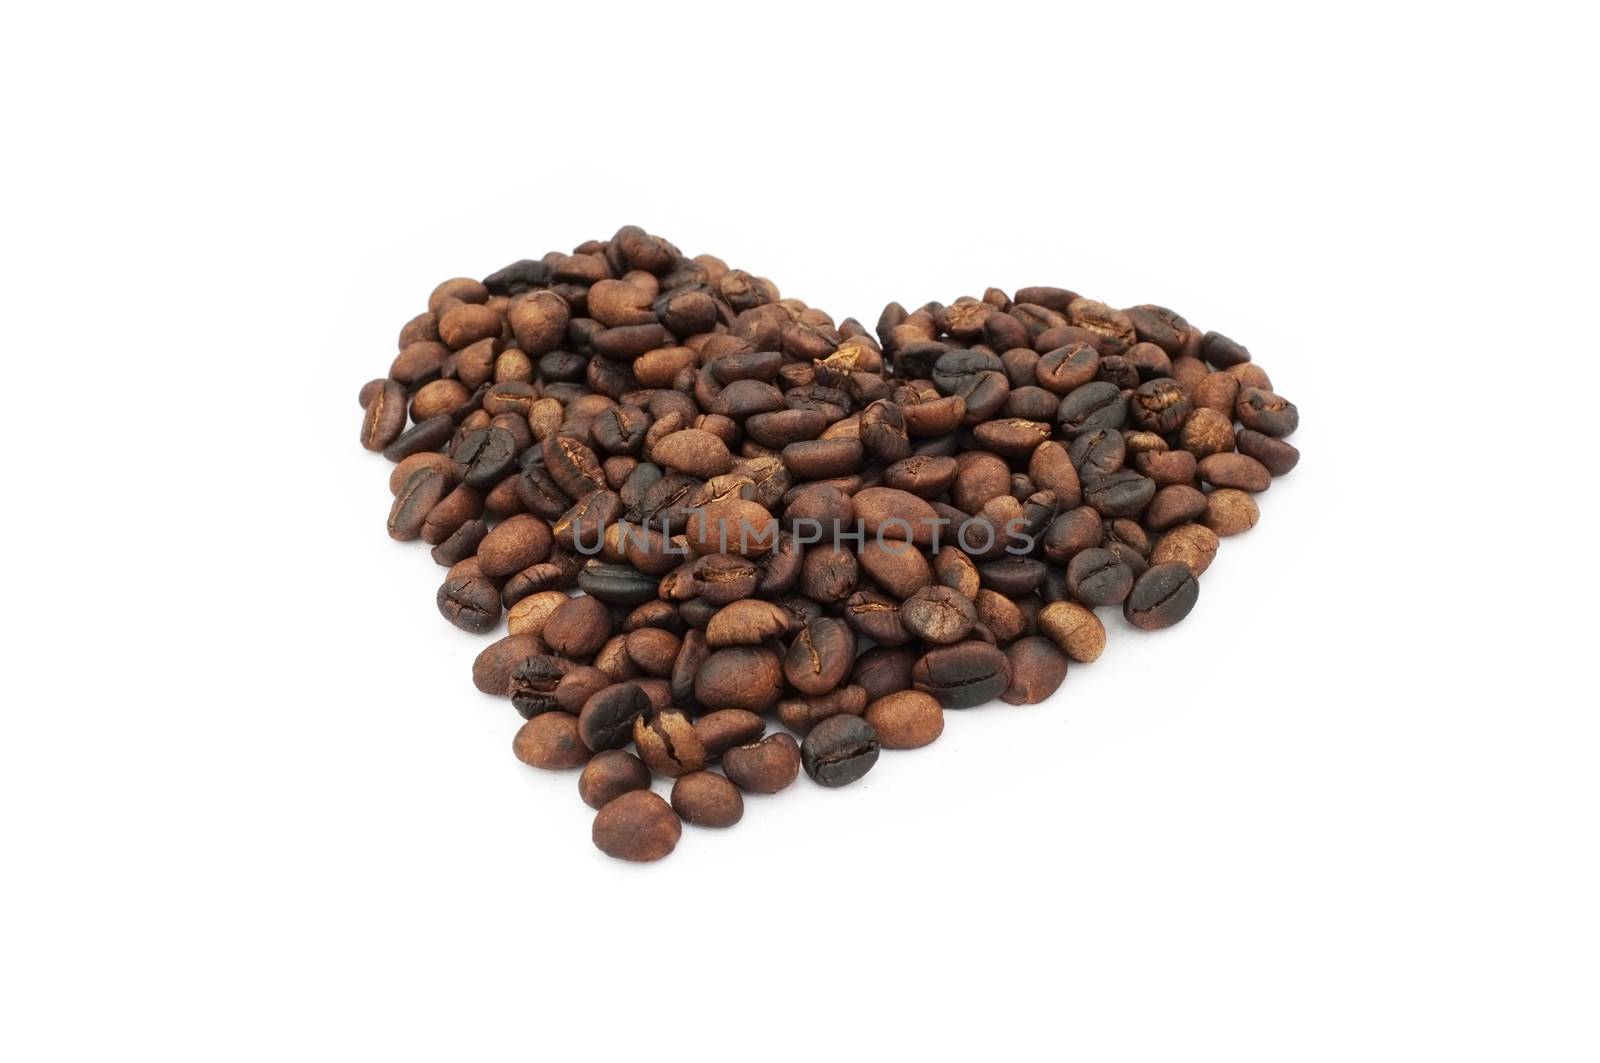 Coffee beans in heart shape by Hepjam